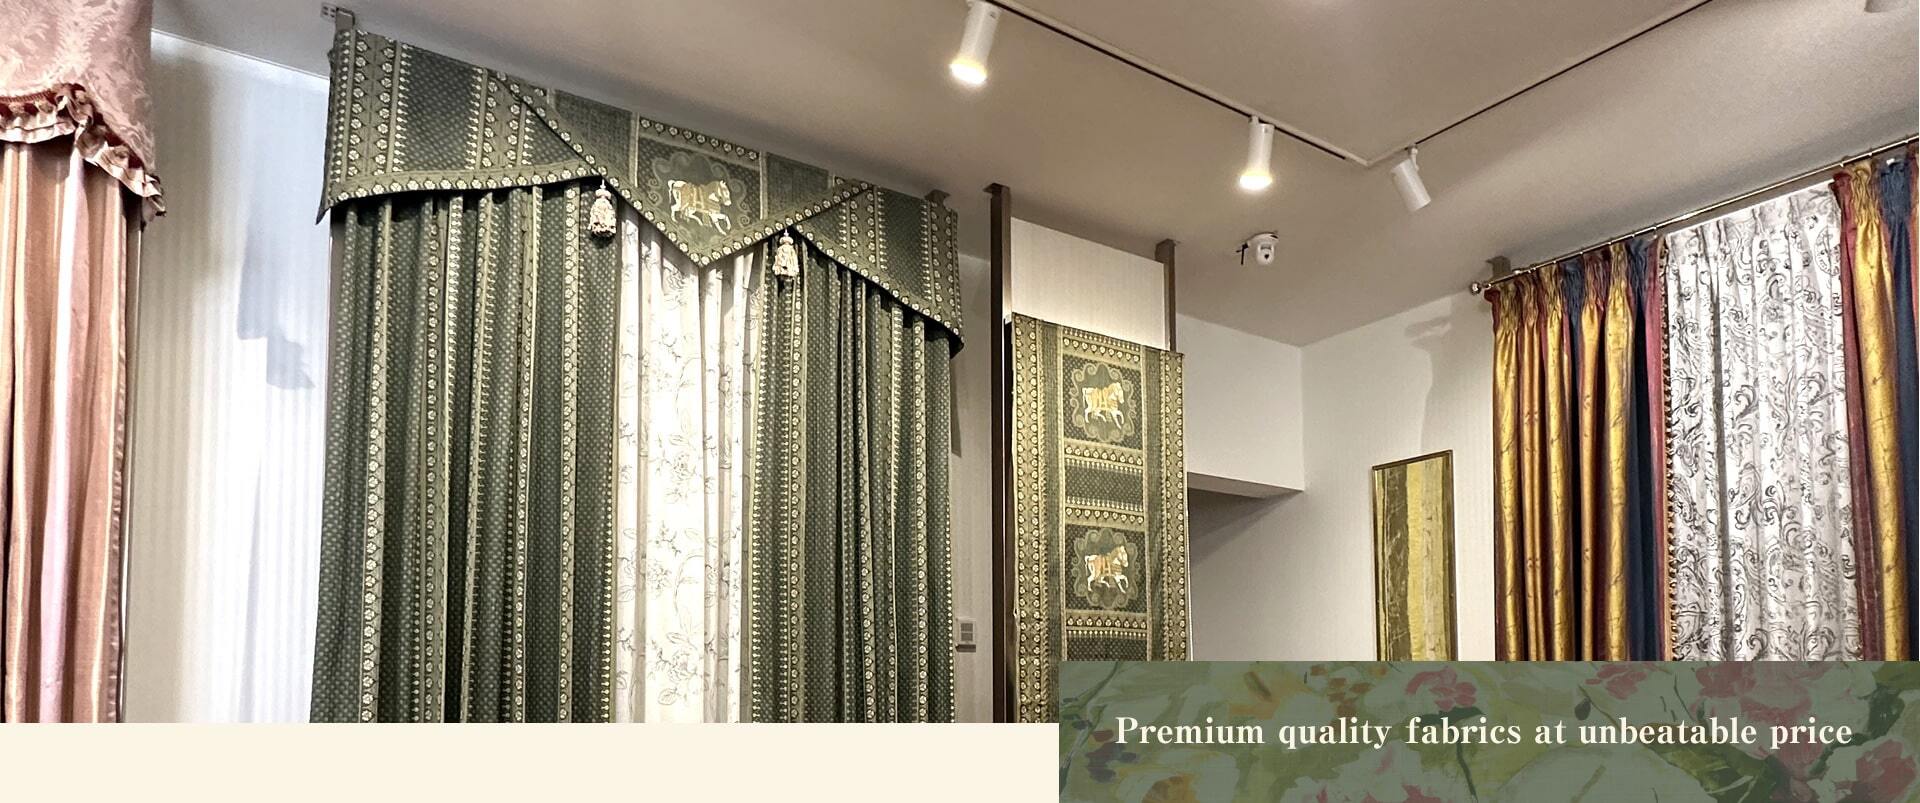 Premium quality fabrics at unbeatable price